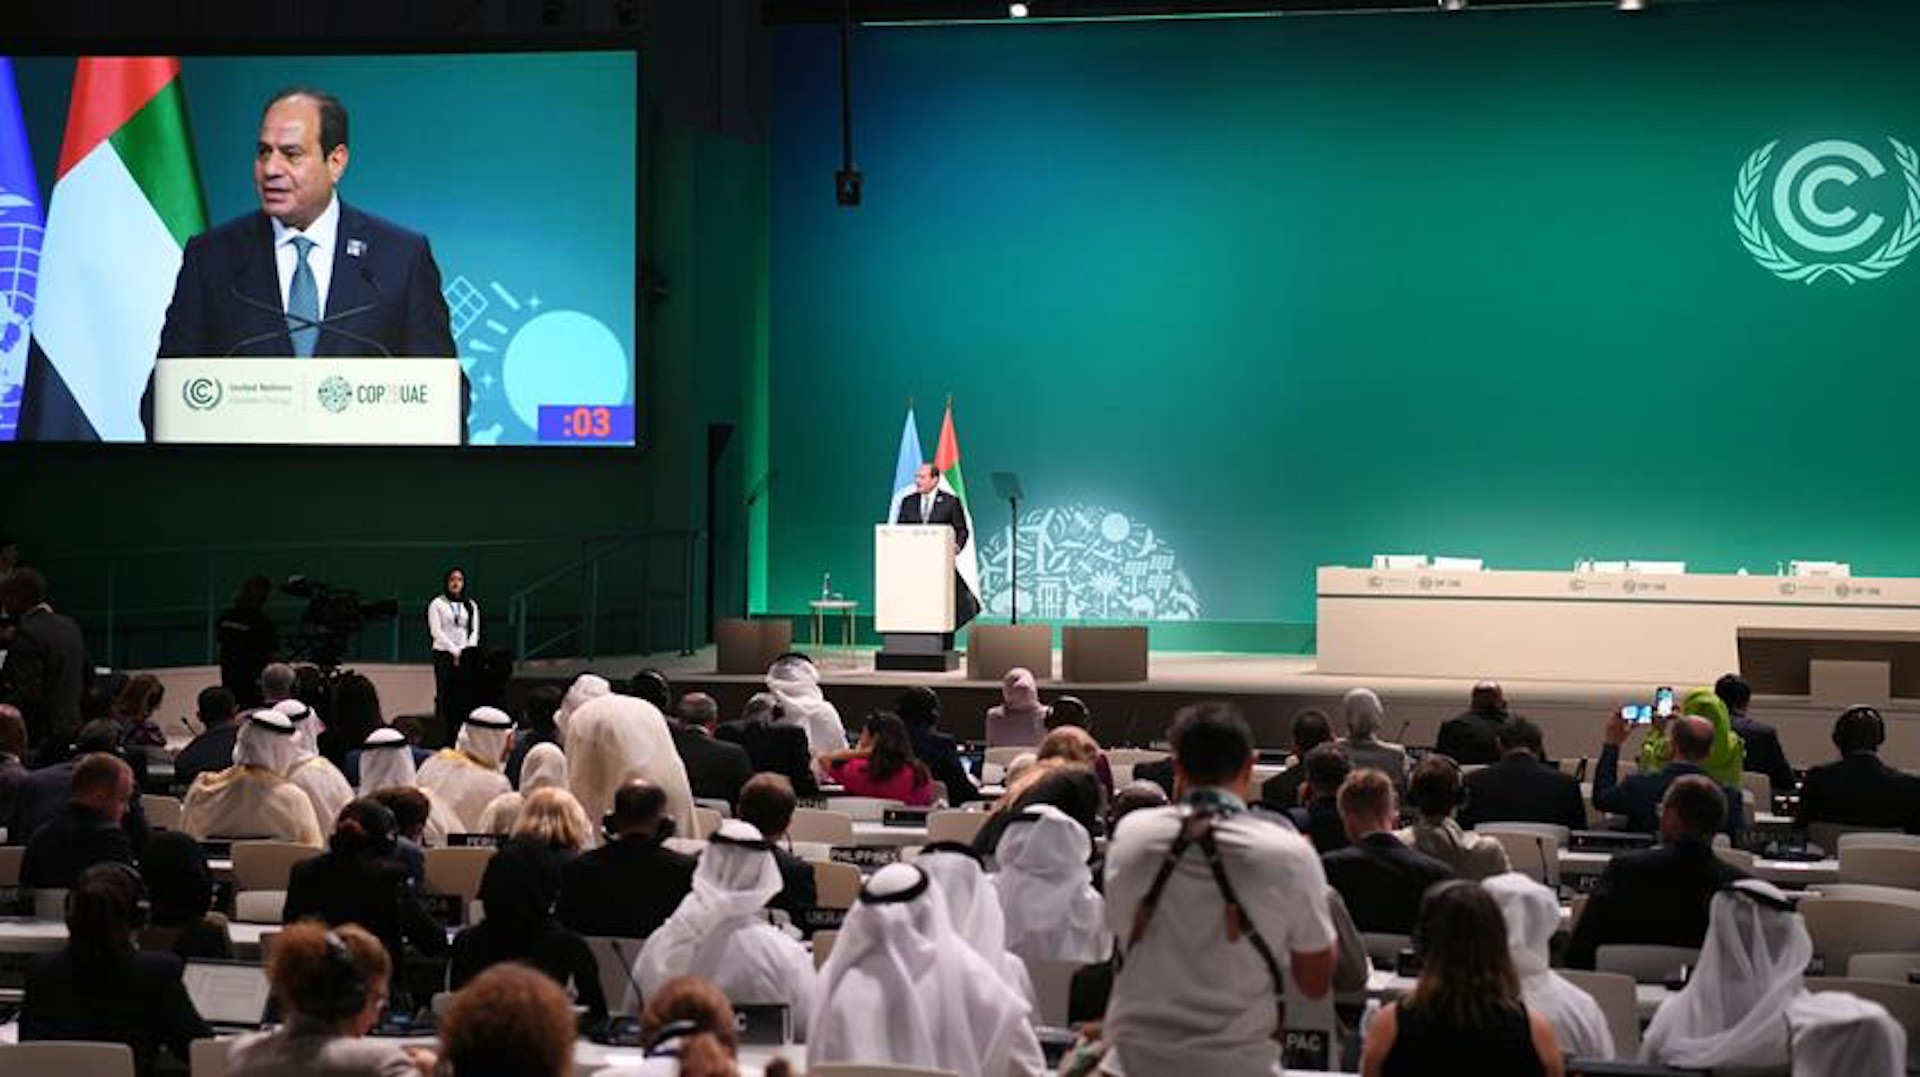 الرئيس عبد الفتاح السيسي يشارك في فعاليات قمة رؤساء الدول والحكومات كوب28 لتغير المناخ بدبي